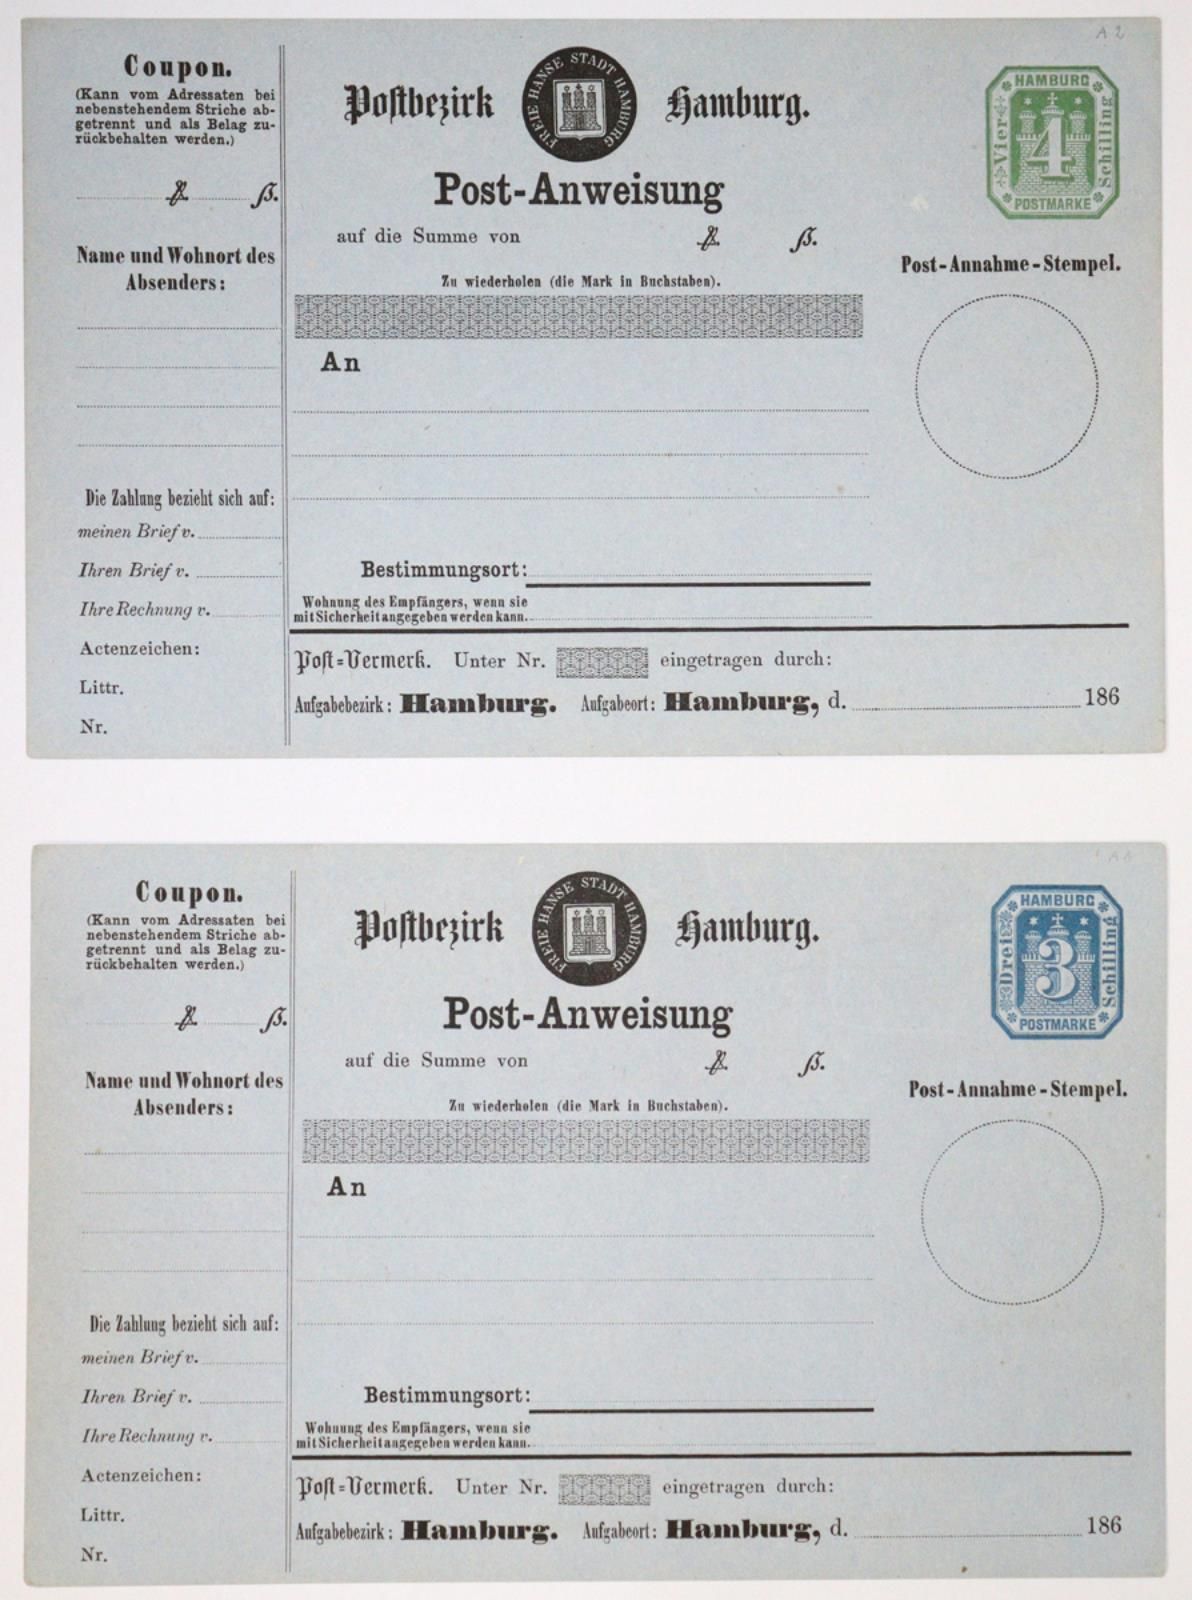 Ganzsachen, Hamburg 1866, postal orders. MI A 1a and Mi A 2 - Good condition. D